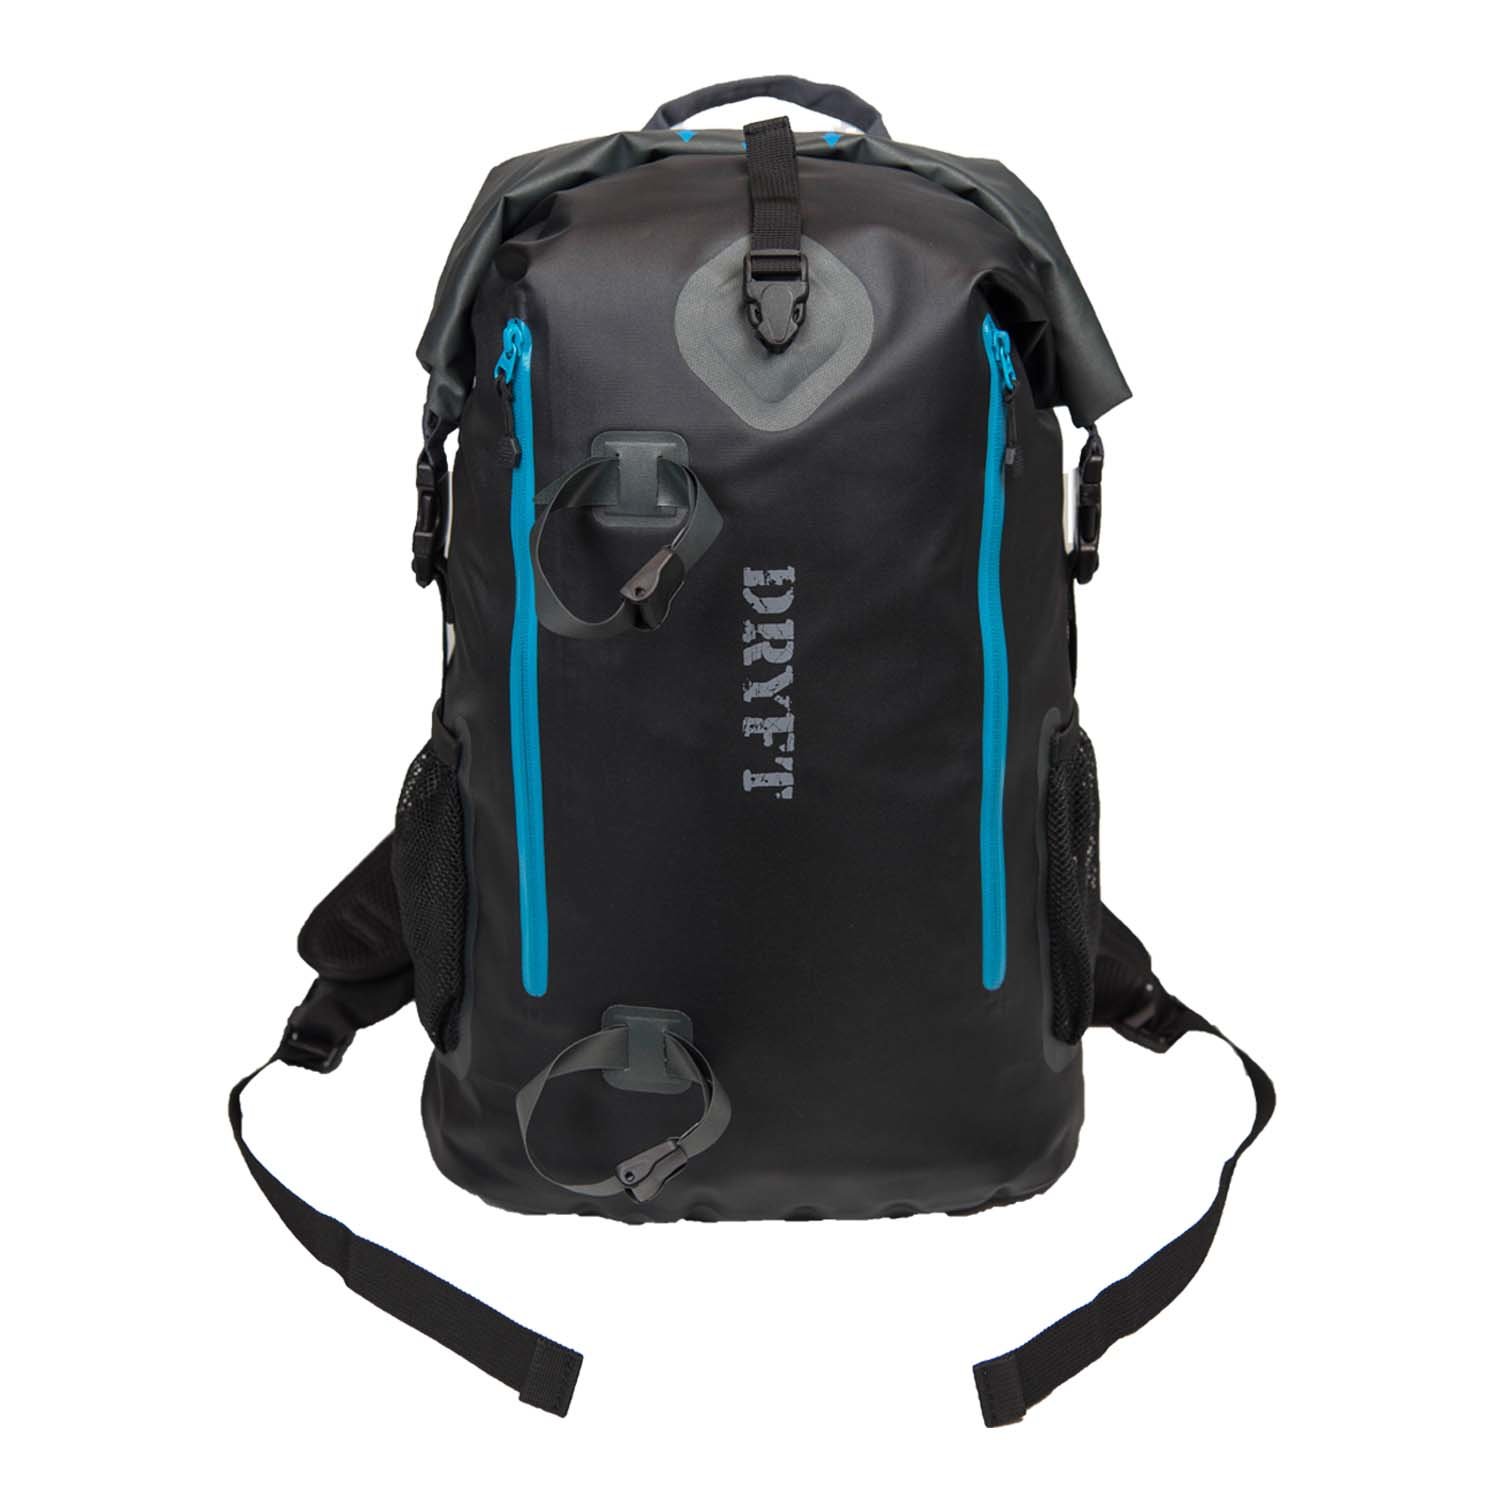 BKCNTRY waterproof backpack